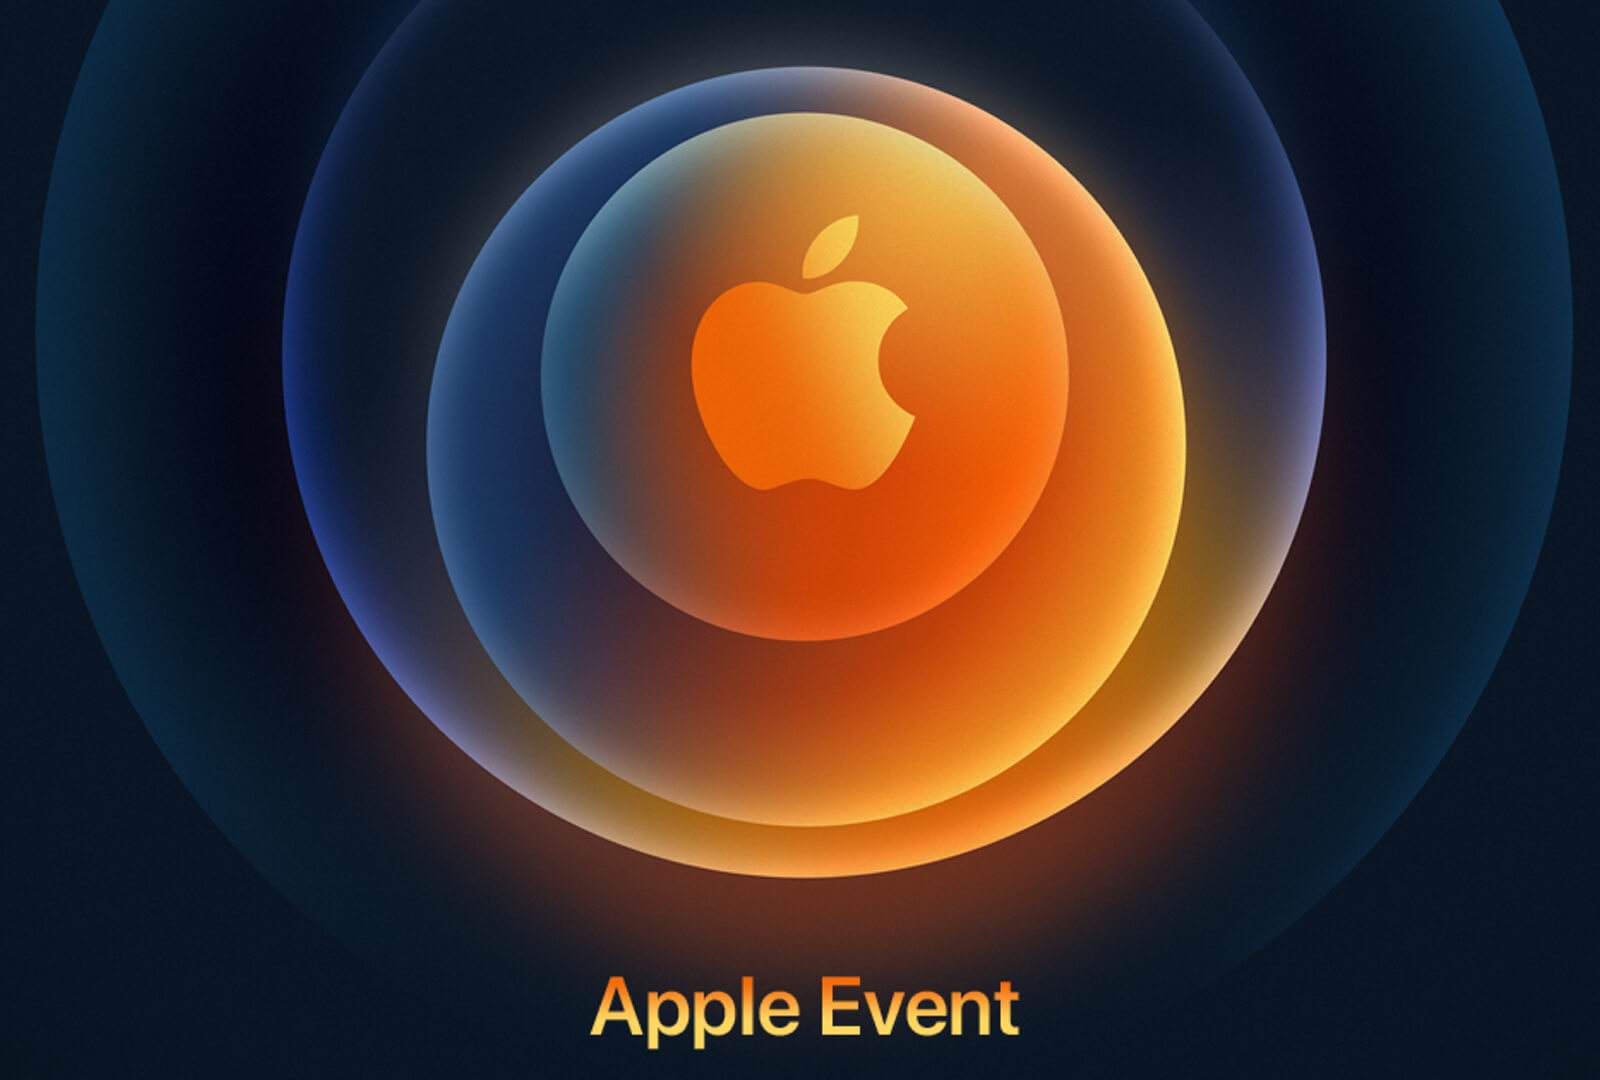 apple event mojmac pazdziernik 2020